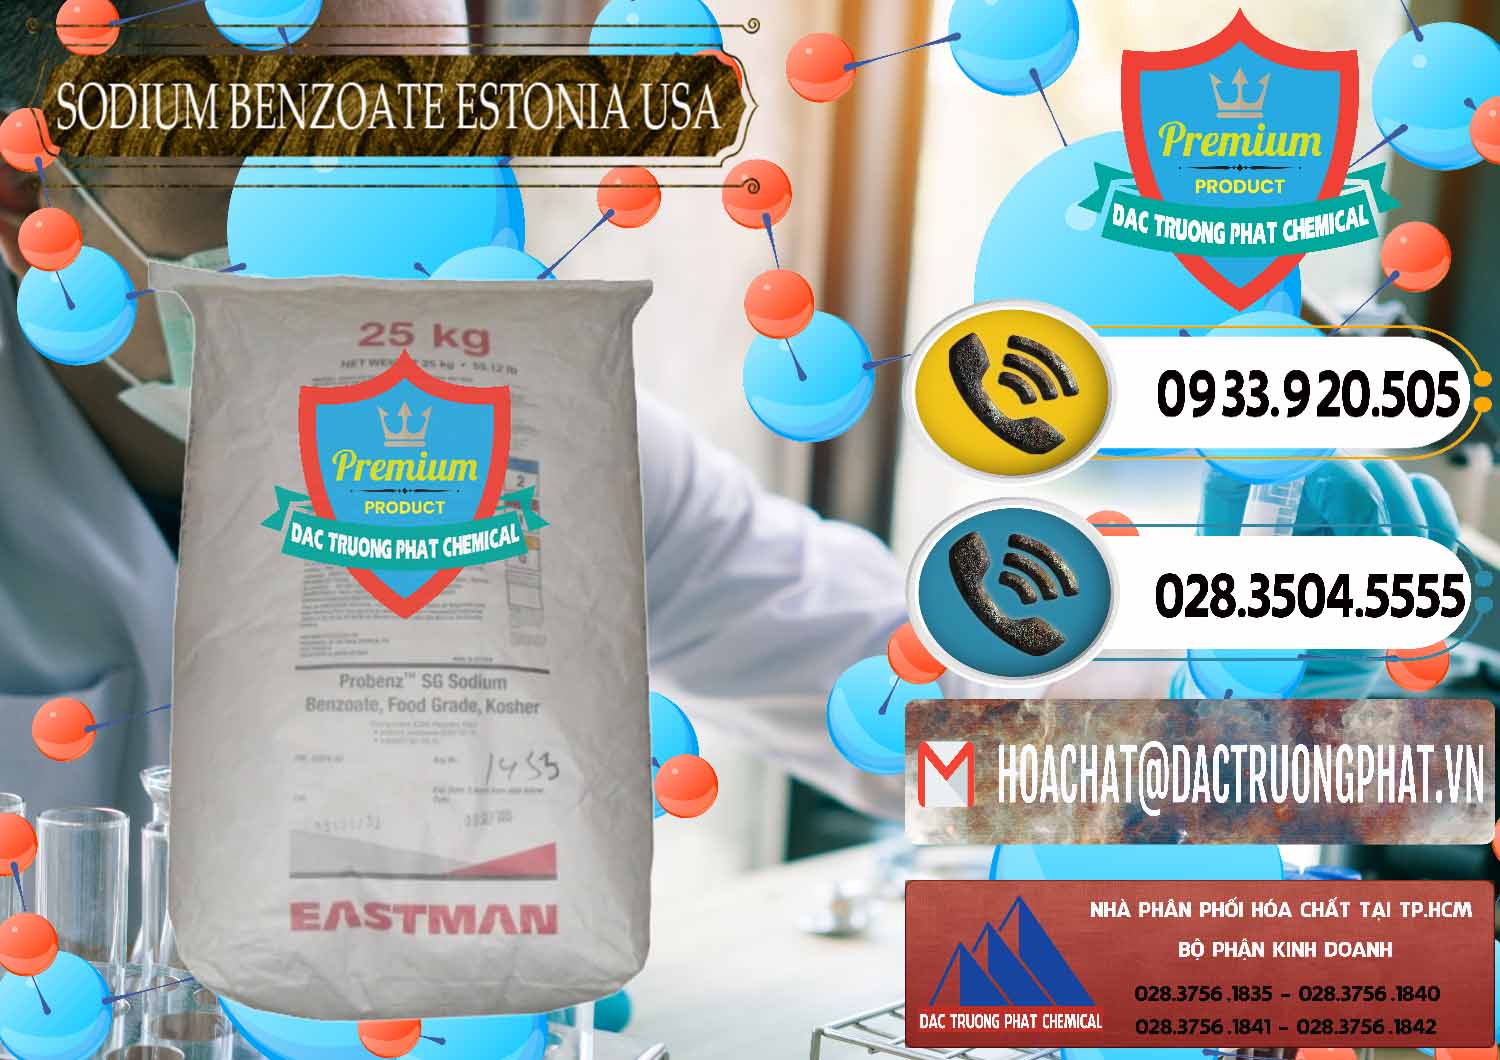 Bán - cung ứng Sodium Benzoate - Mốc Bột Estonia Mỹ USA - 0468 - Nhà phân phối và bán hóa chất tại TP.HCM - hoachatdetnhuom.vn